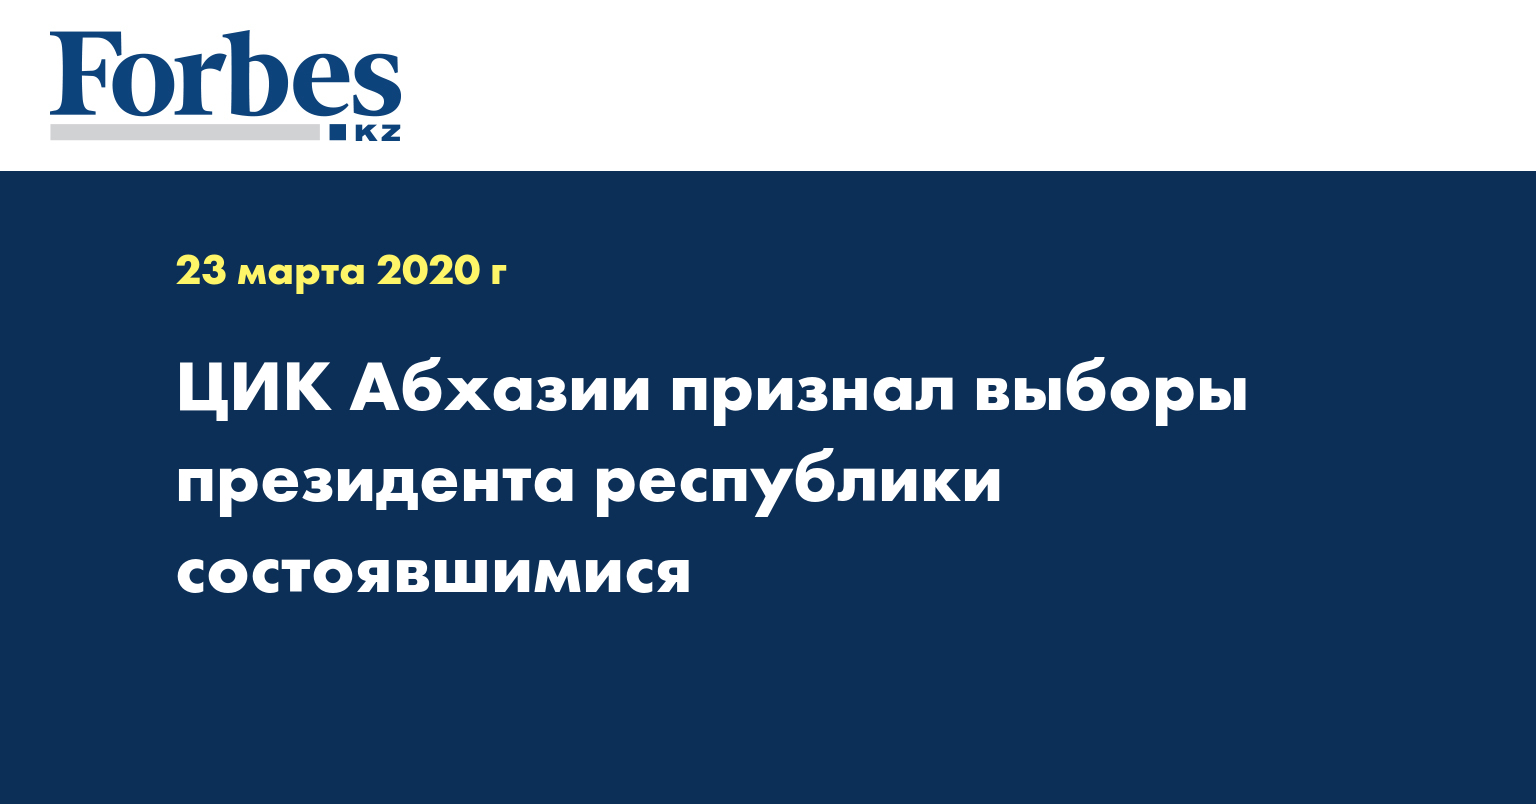 ЦИК Абхазии признал выборы президента республики состоявшимися